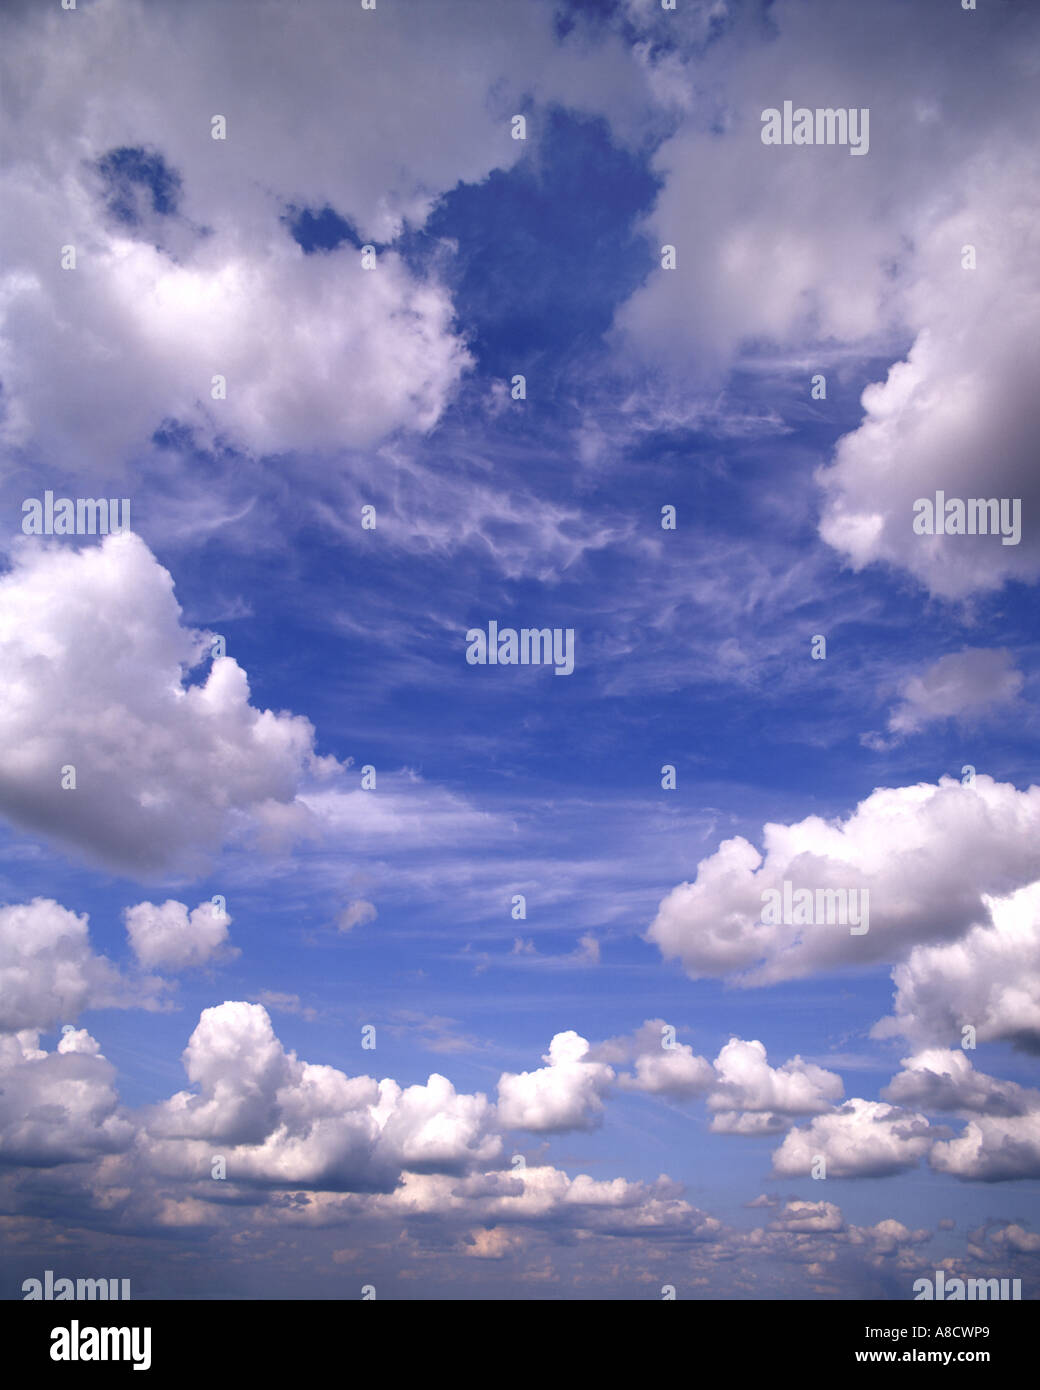 Hintergrund-Konzept: Wolkenbildung Stockfoto